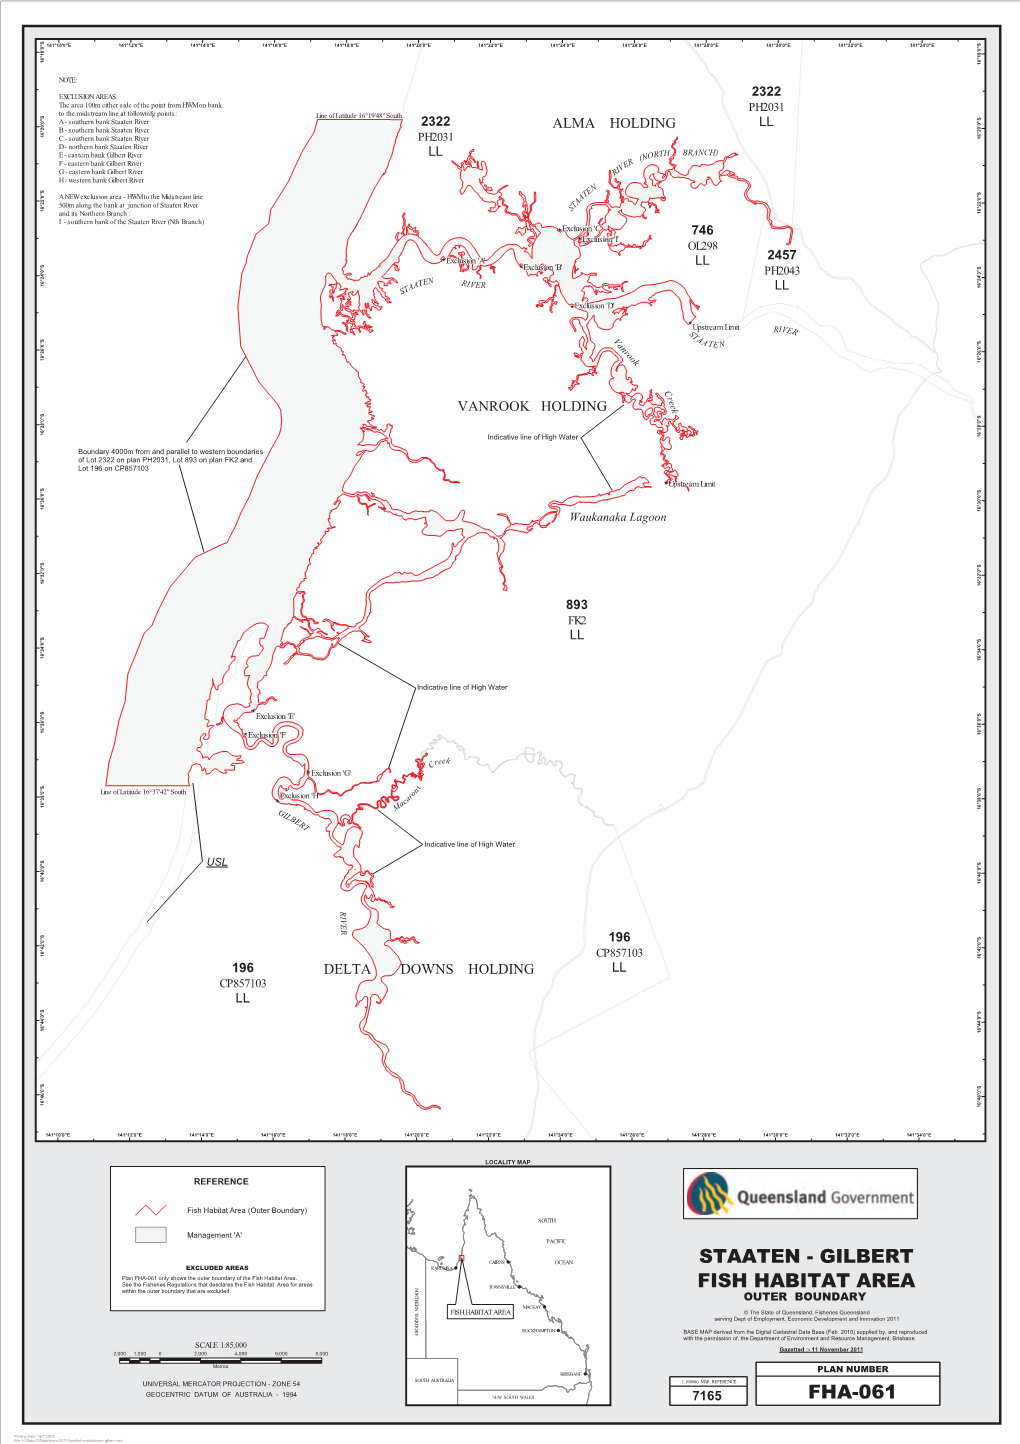 Declared Fish Habitat Area Map Or Summary